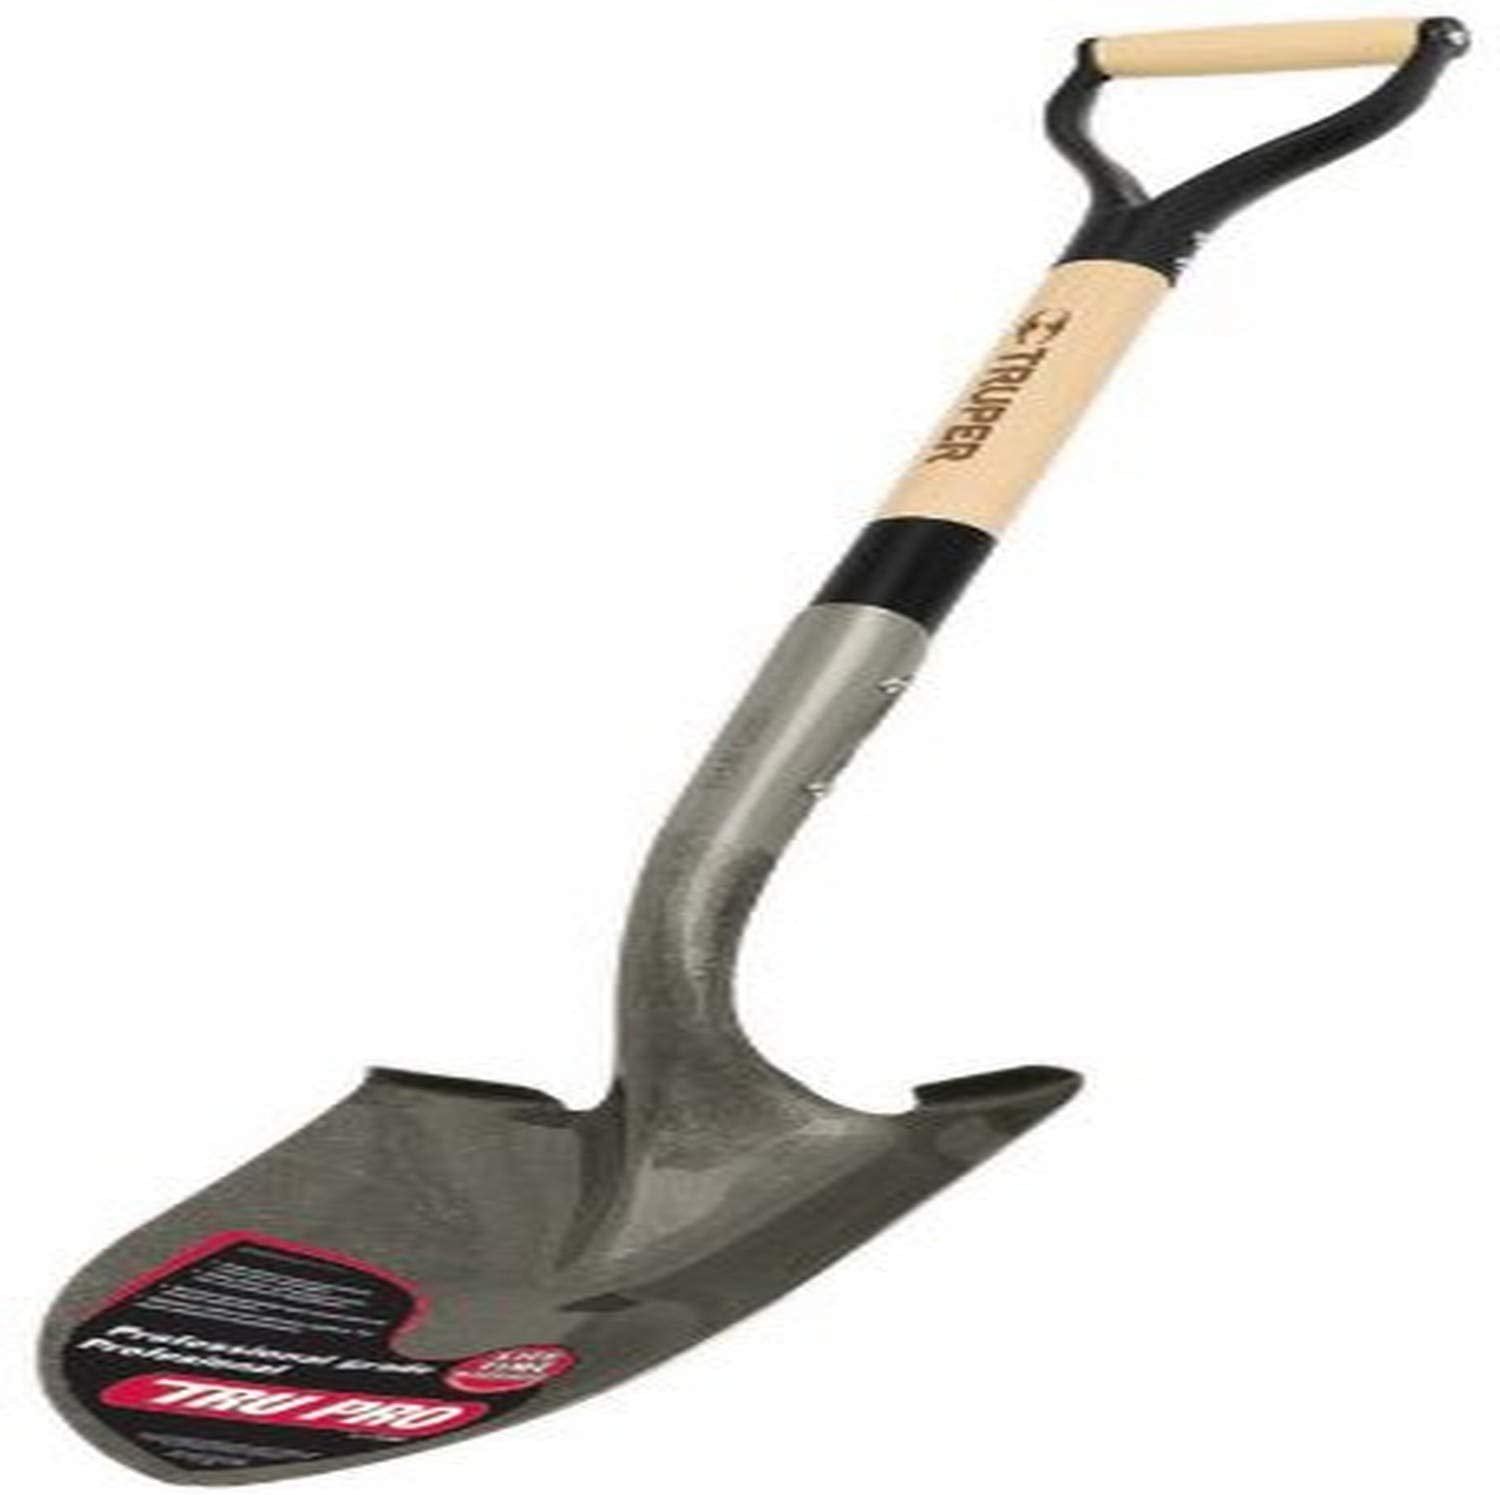 Truper Tools 31185 Tru Tough Round Point Shovel 30-Inch D-Handle 